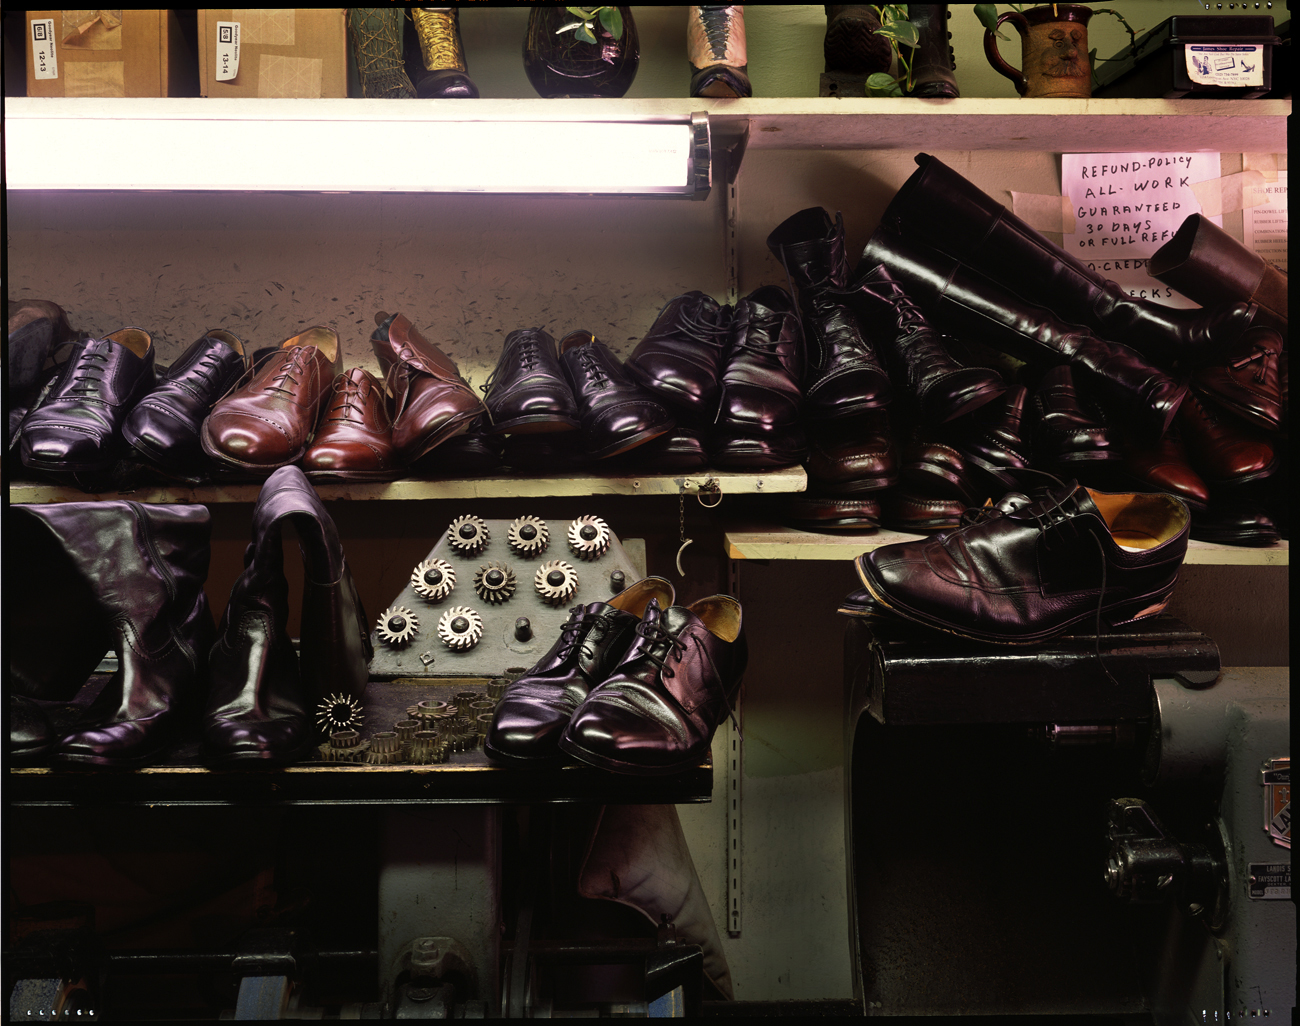 Shoe repair shop, New York City, 2016